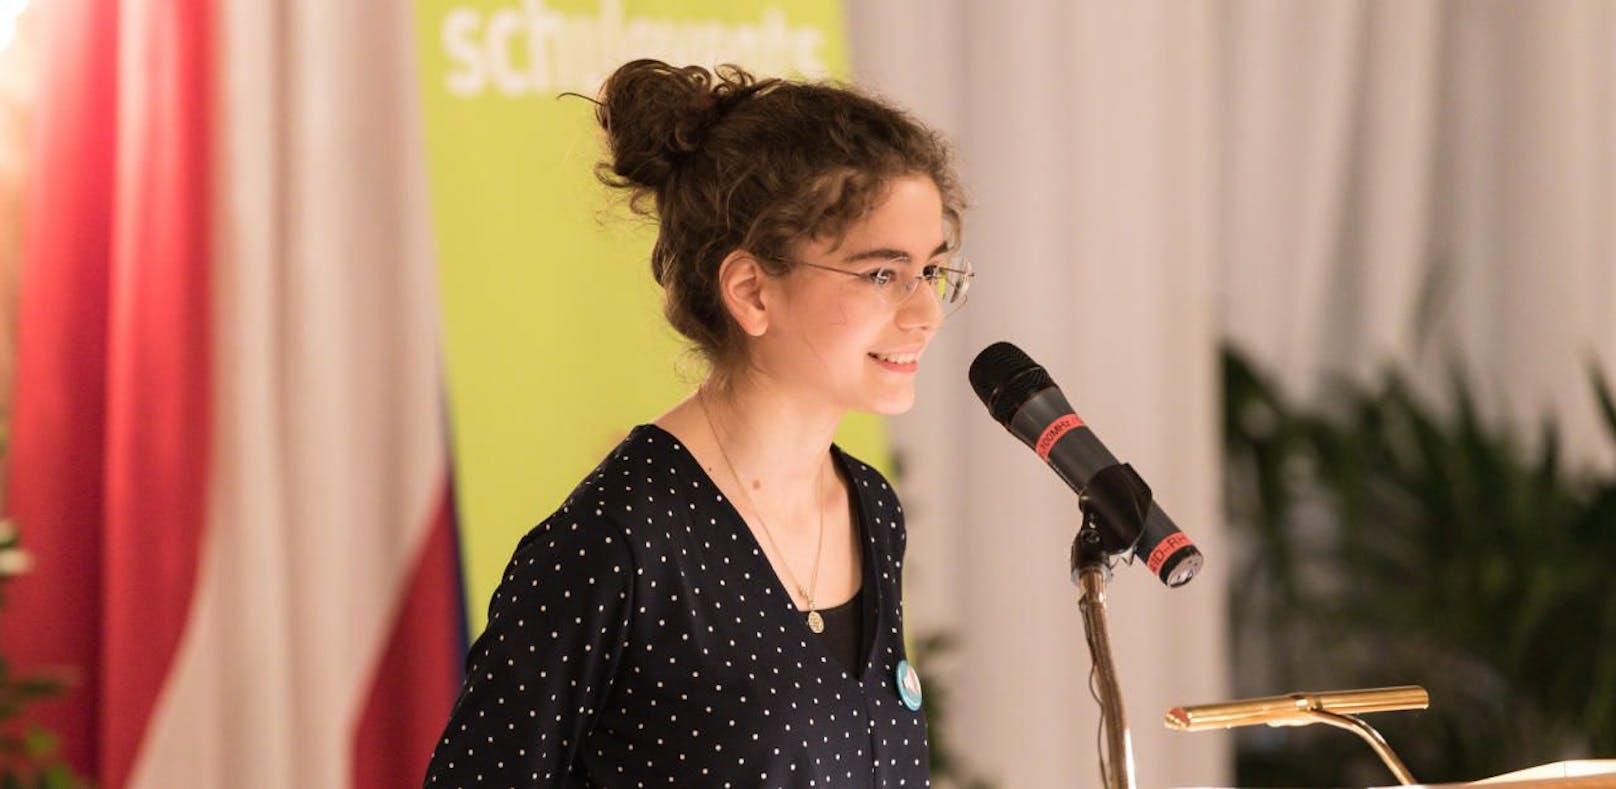 Der Österreichische Jugend-Redewettbewerb ist eine Veranstaltung vom Bundeskanzleramt - Sektion Jugend und Familie. Den Wiener Landesbewerb organisiert wienXtra-schulevents mit der MA 13 - Fachbereich Jugend.